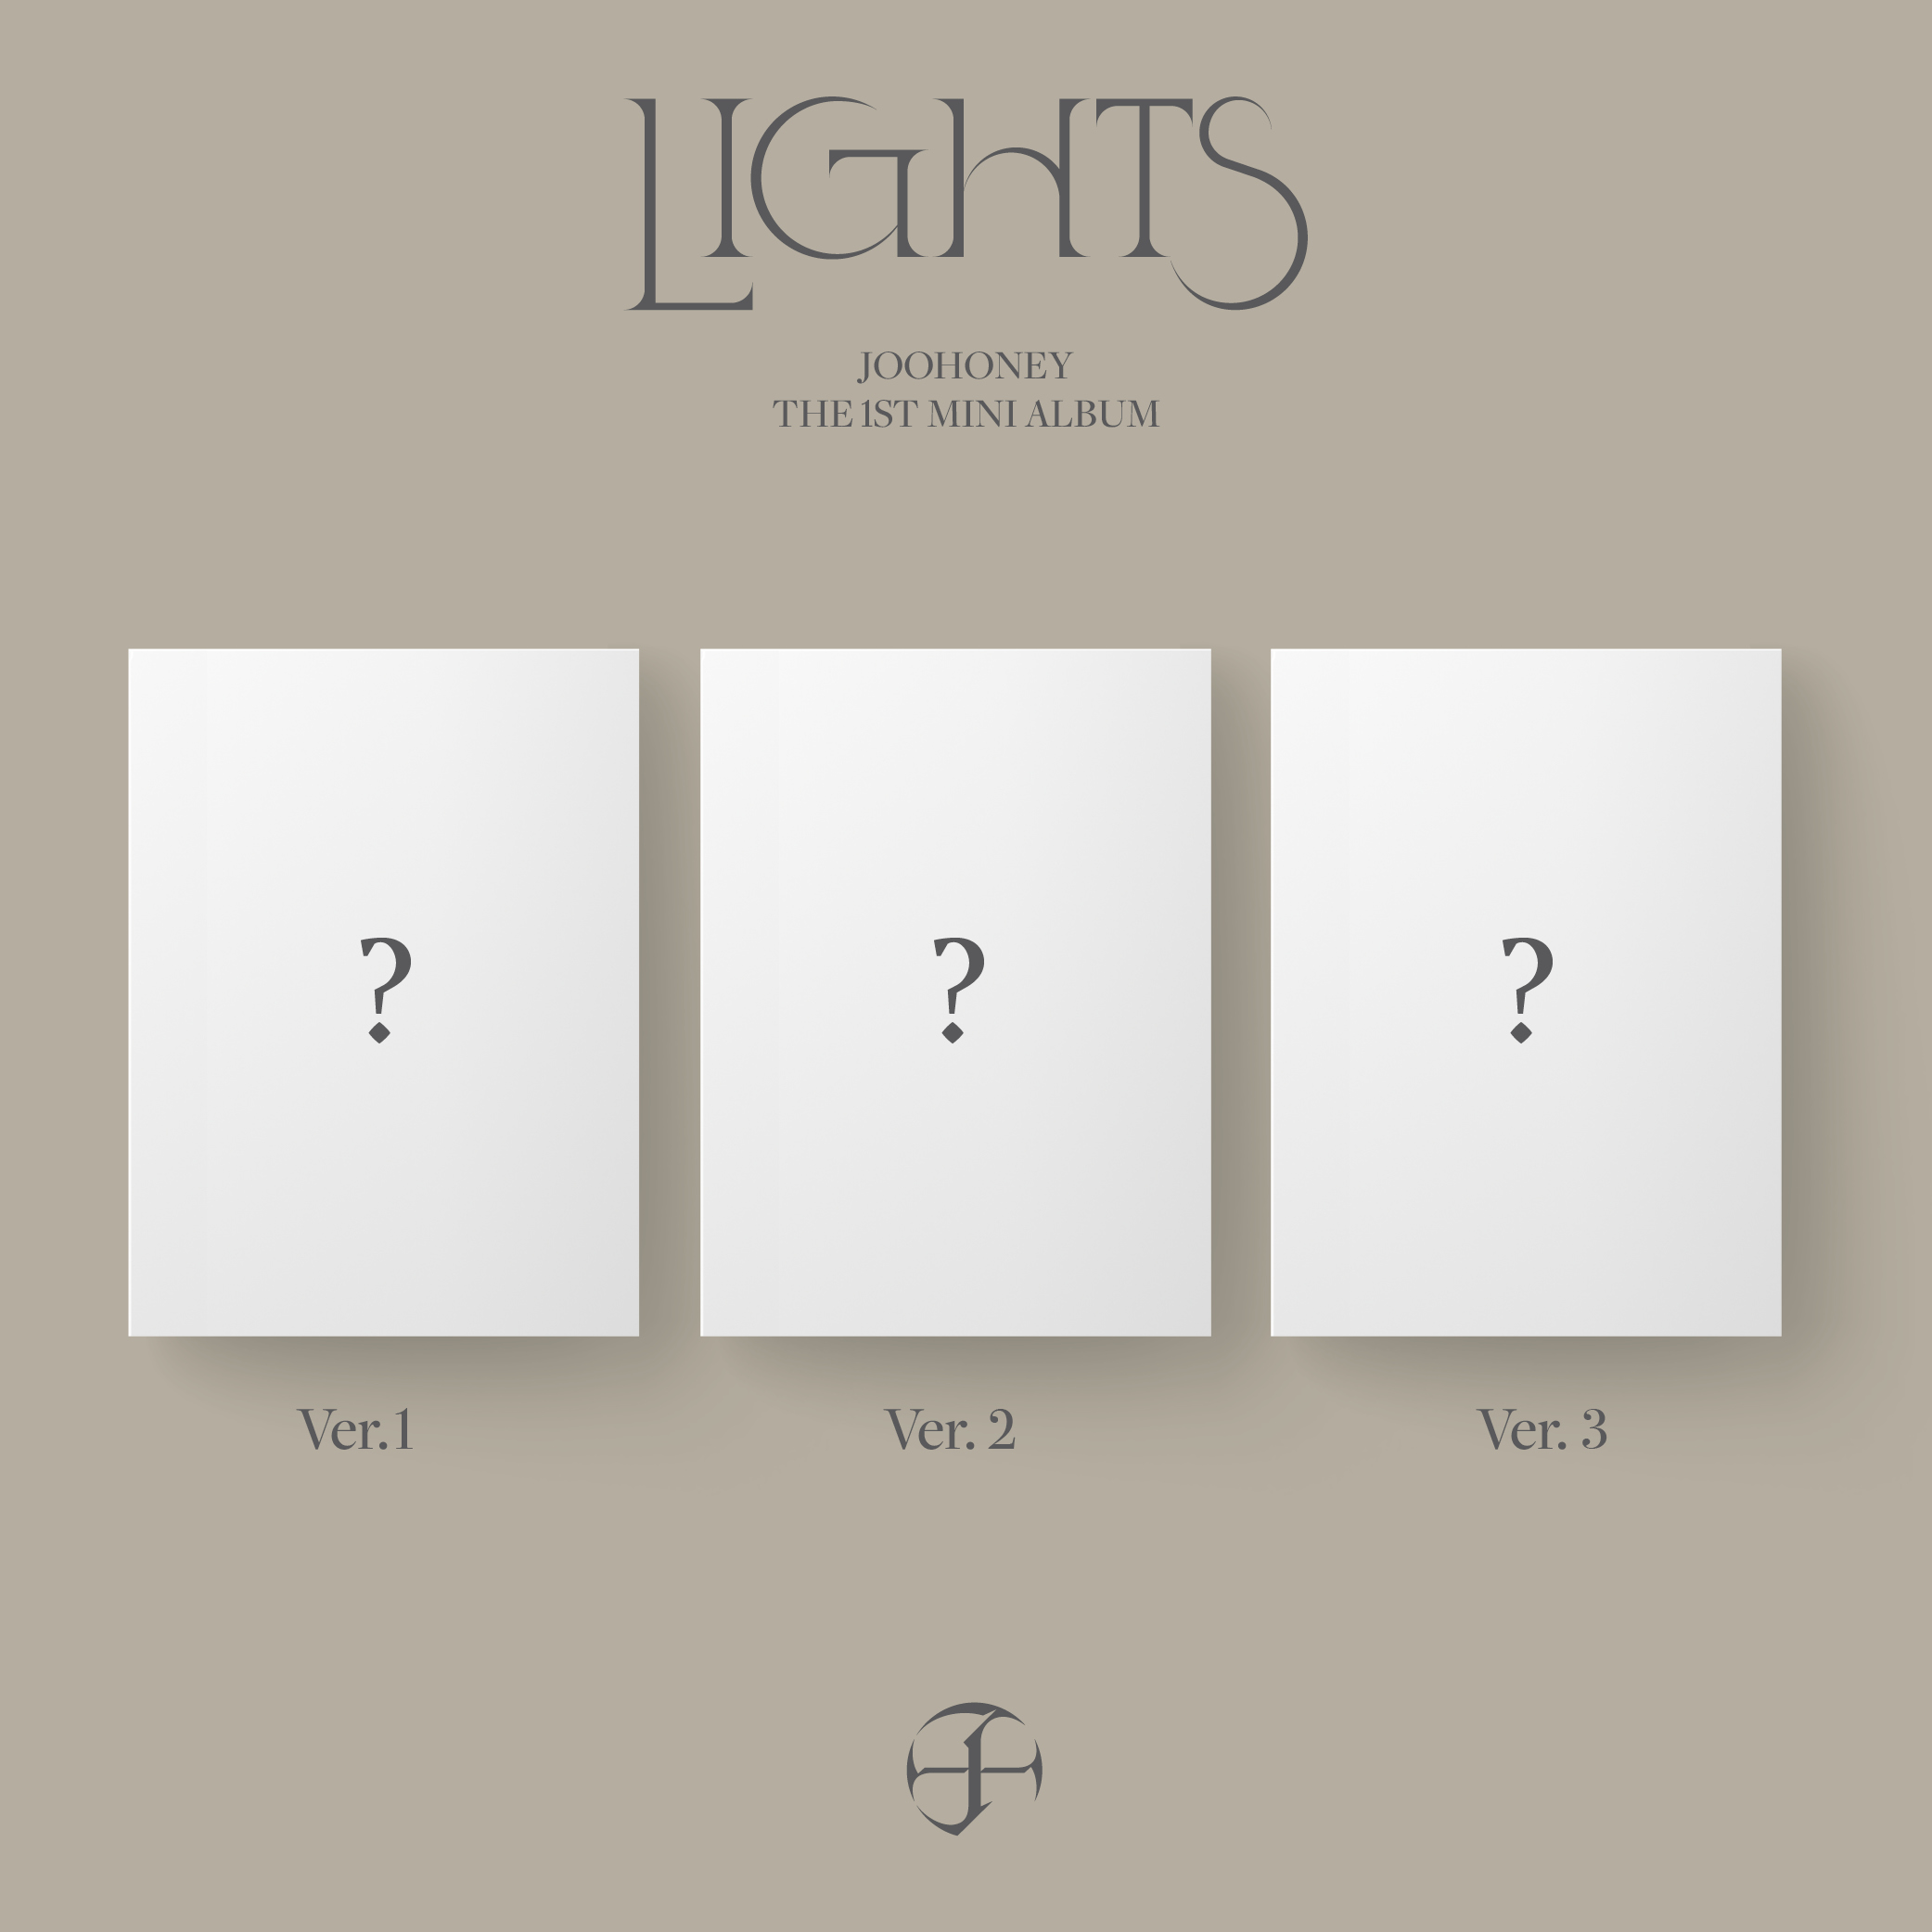 [全款 裸专] [3CD 套装] JOOHONEY - 1st Mini Album [LIGHTS] (Ver.1 + Ver.2 + Ver.3)_Trespass_MonstaX资讯博